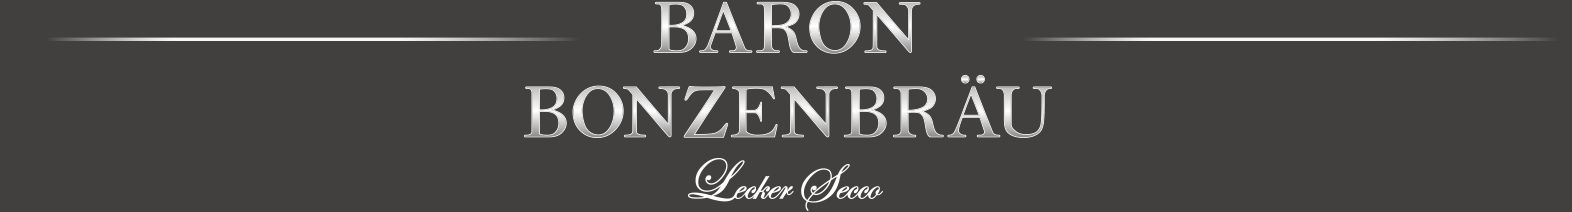 Baron Bonzenbräu - lecker secco